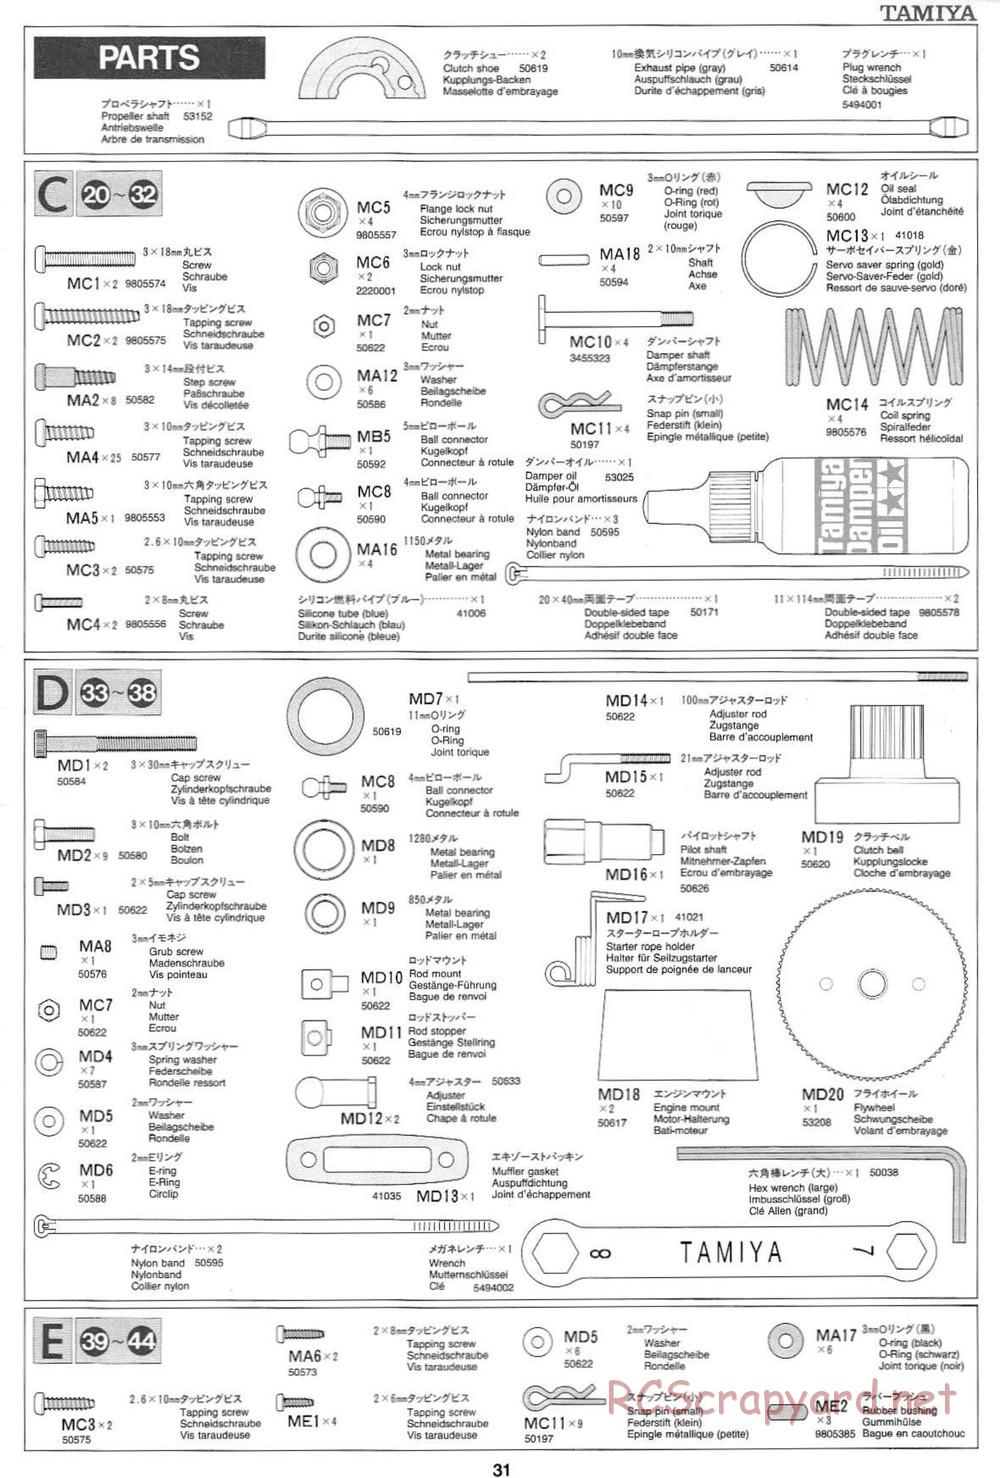 Tamiya - Mercedes CLK GTR Team Sportswear - TG10 Mk.1 Chassis - Manual - Page 31